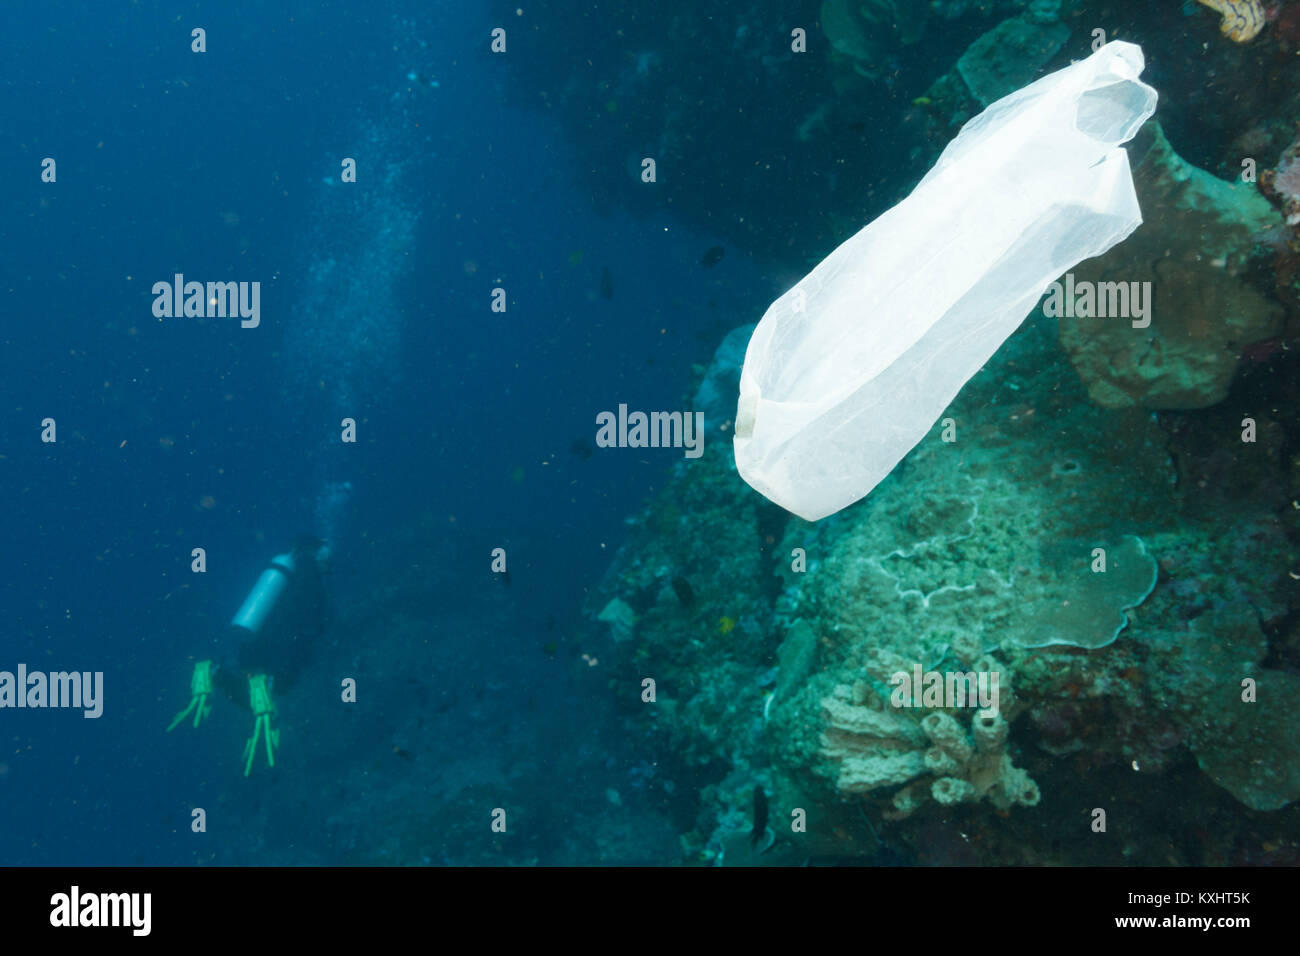 Un sac en plastique flotte dans la mer après avoir été jetés, Parc national marin de Bunaken, au nord de Sulawesi, Indonésie Banque D'Images